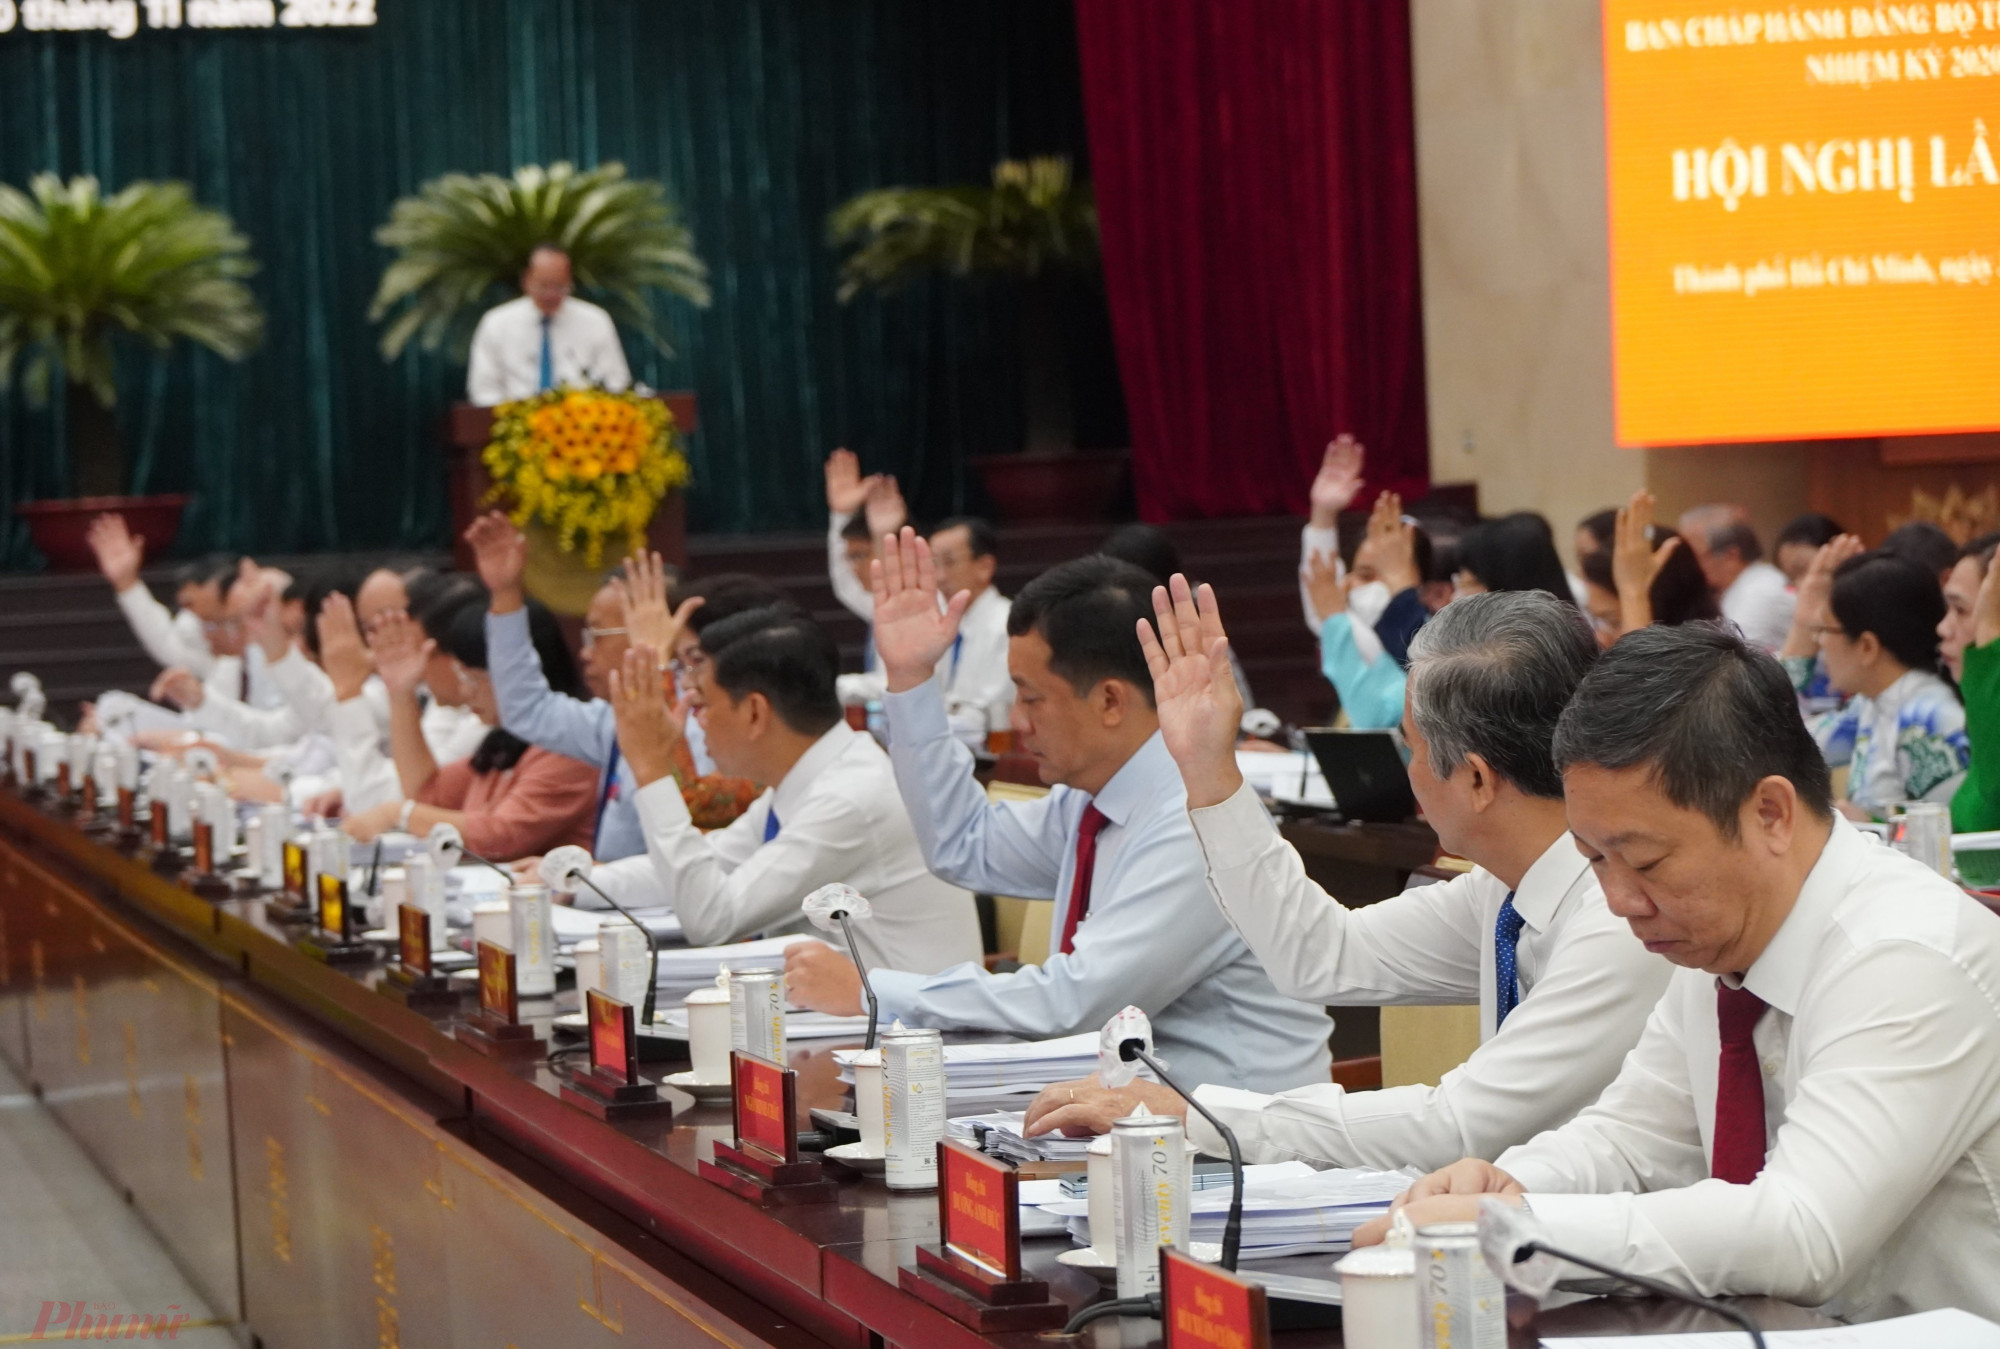 Các đại biểu đã hiểu quyết thống nhất nhiều nội dung quan trọng để phát triển kinh tế, xã hội của TPHCM.